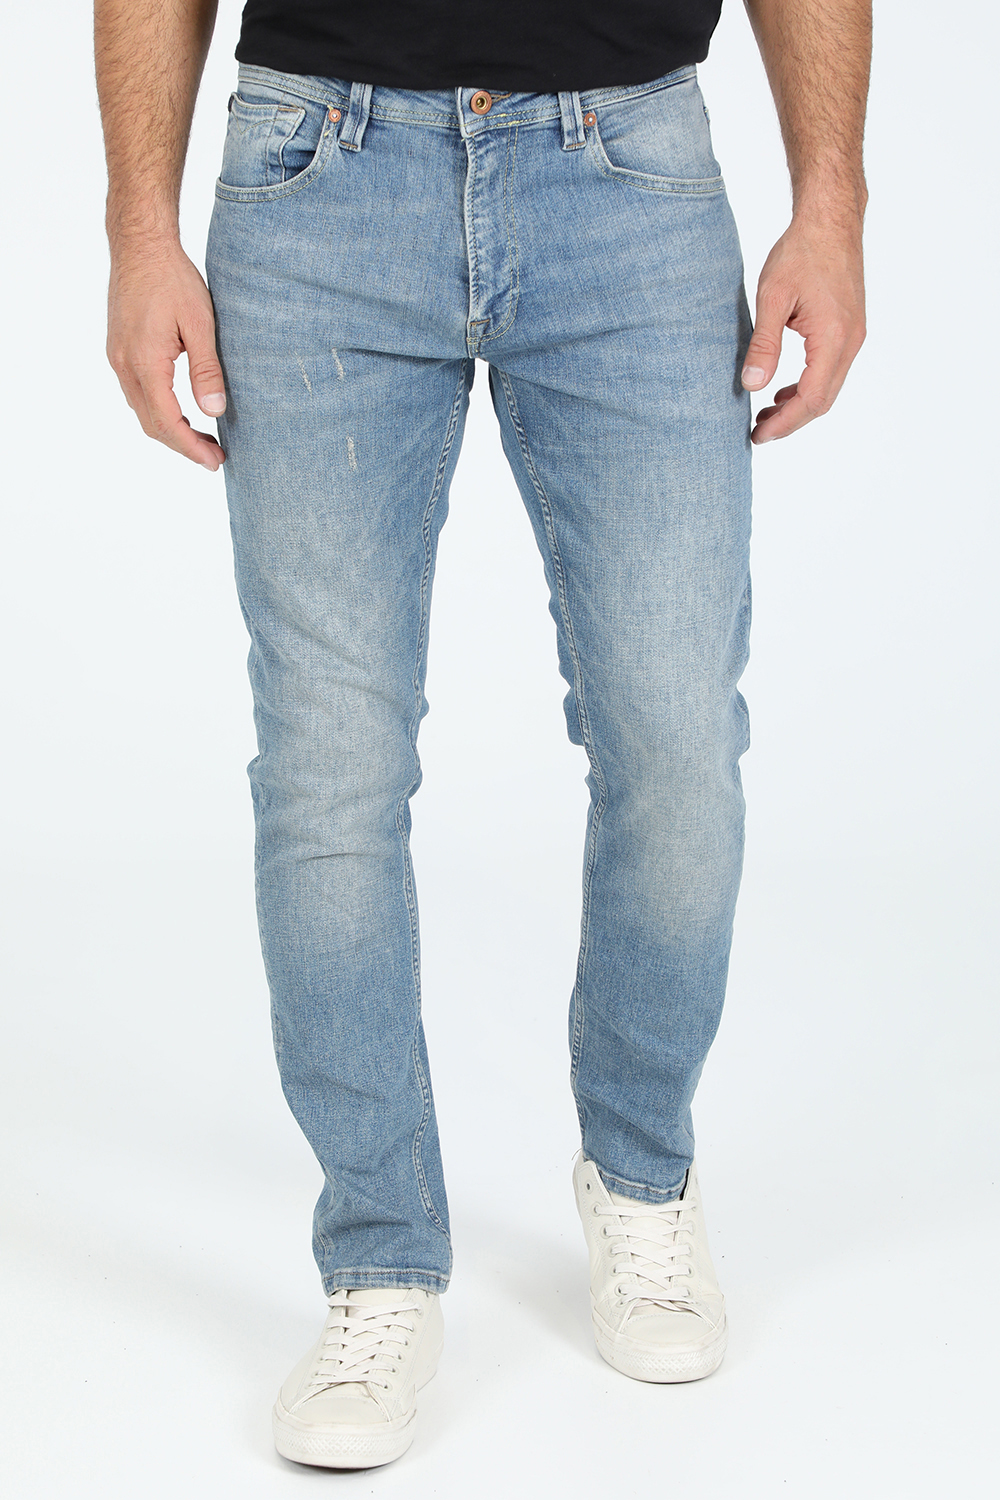 Ανδρικά/Ρούχα/Τζίν/Skinny GABBA - Ανδρικό jean παντελόνι GABBA Nico K4109 μπλε